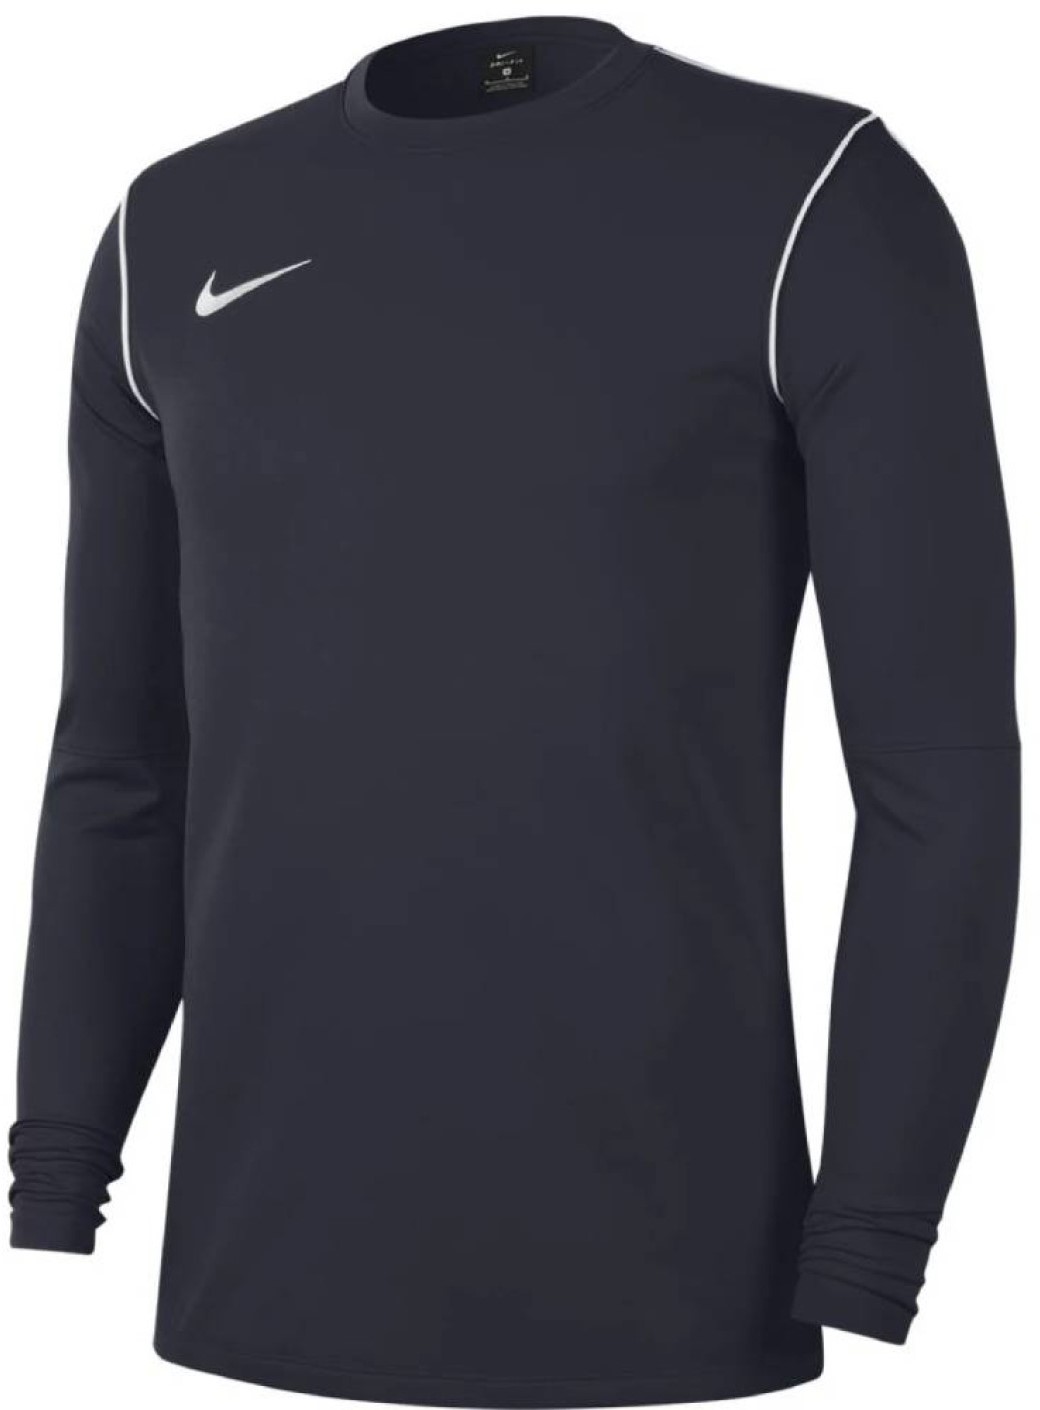 Μακρυμάνικη μπλούζα Nike M NK DF PARK20 CREW TOP R